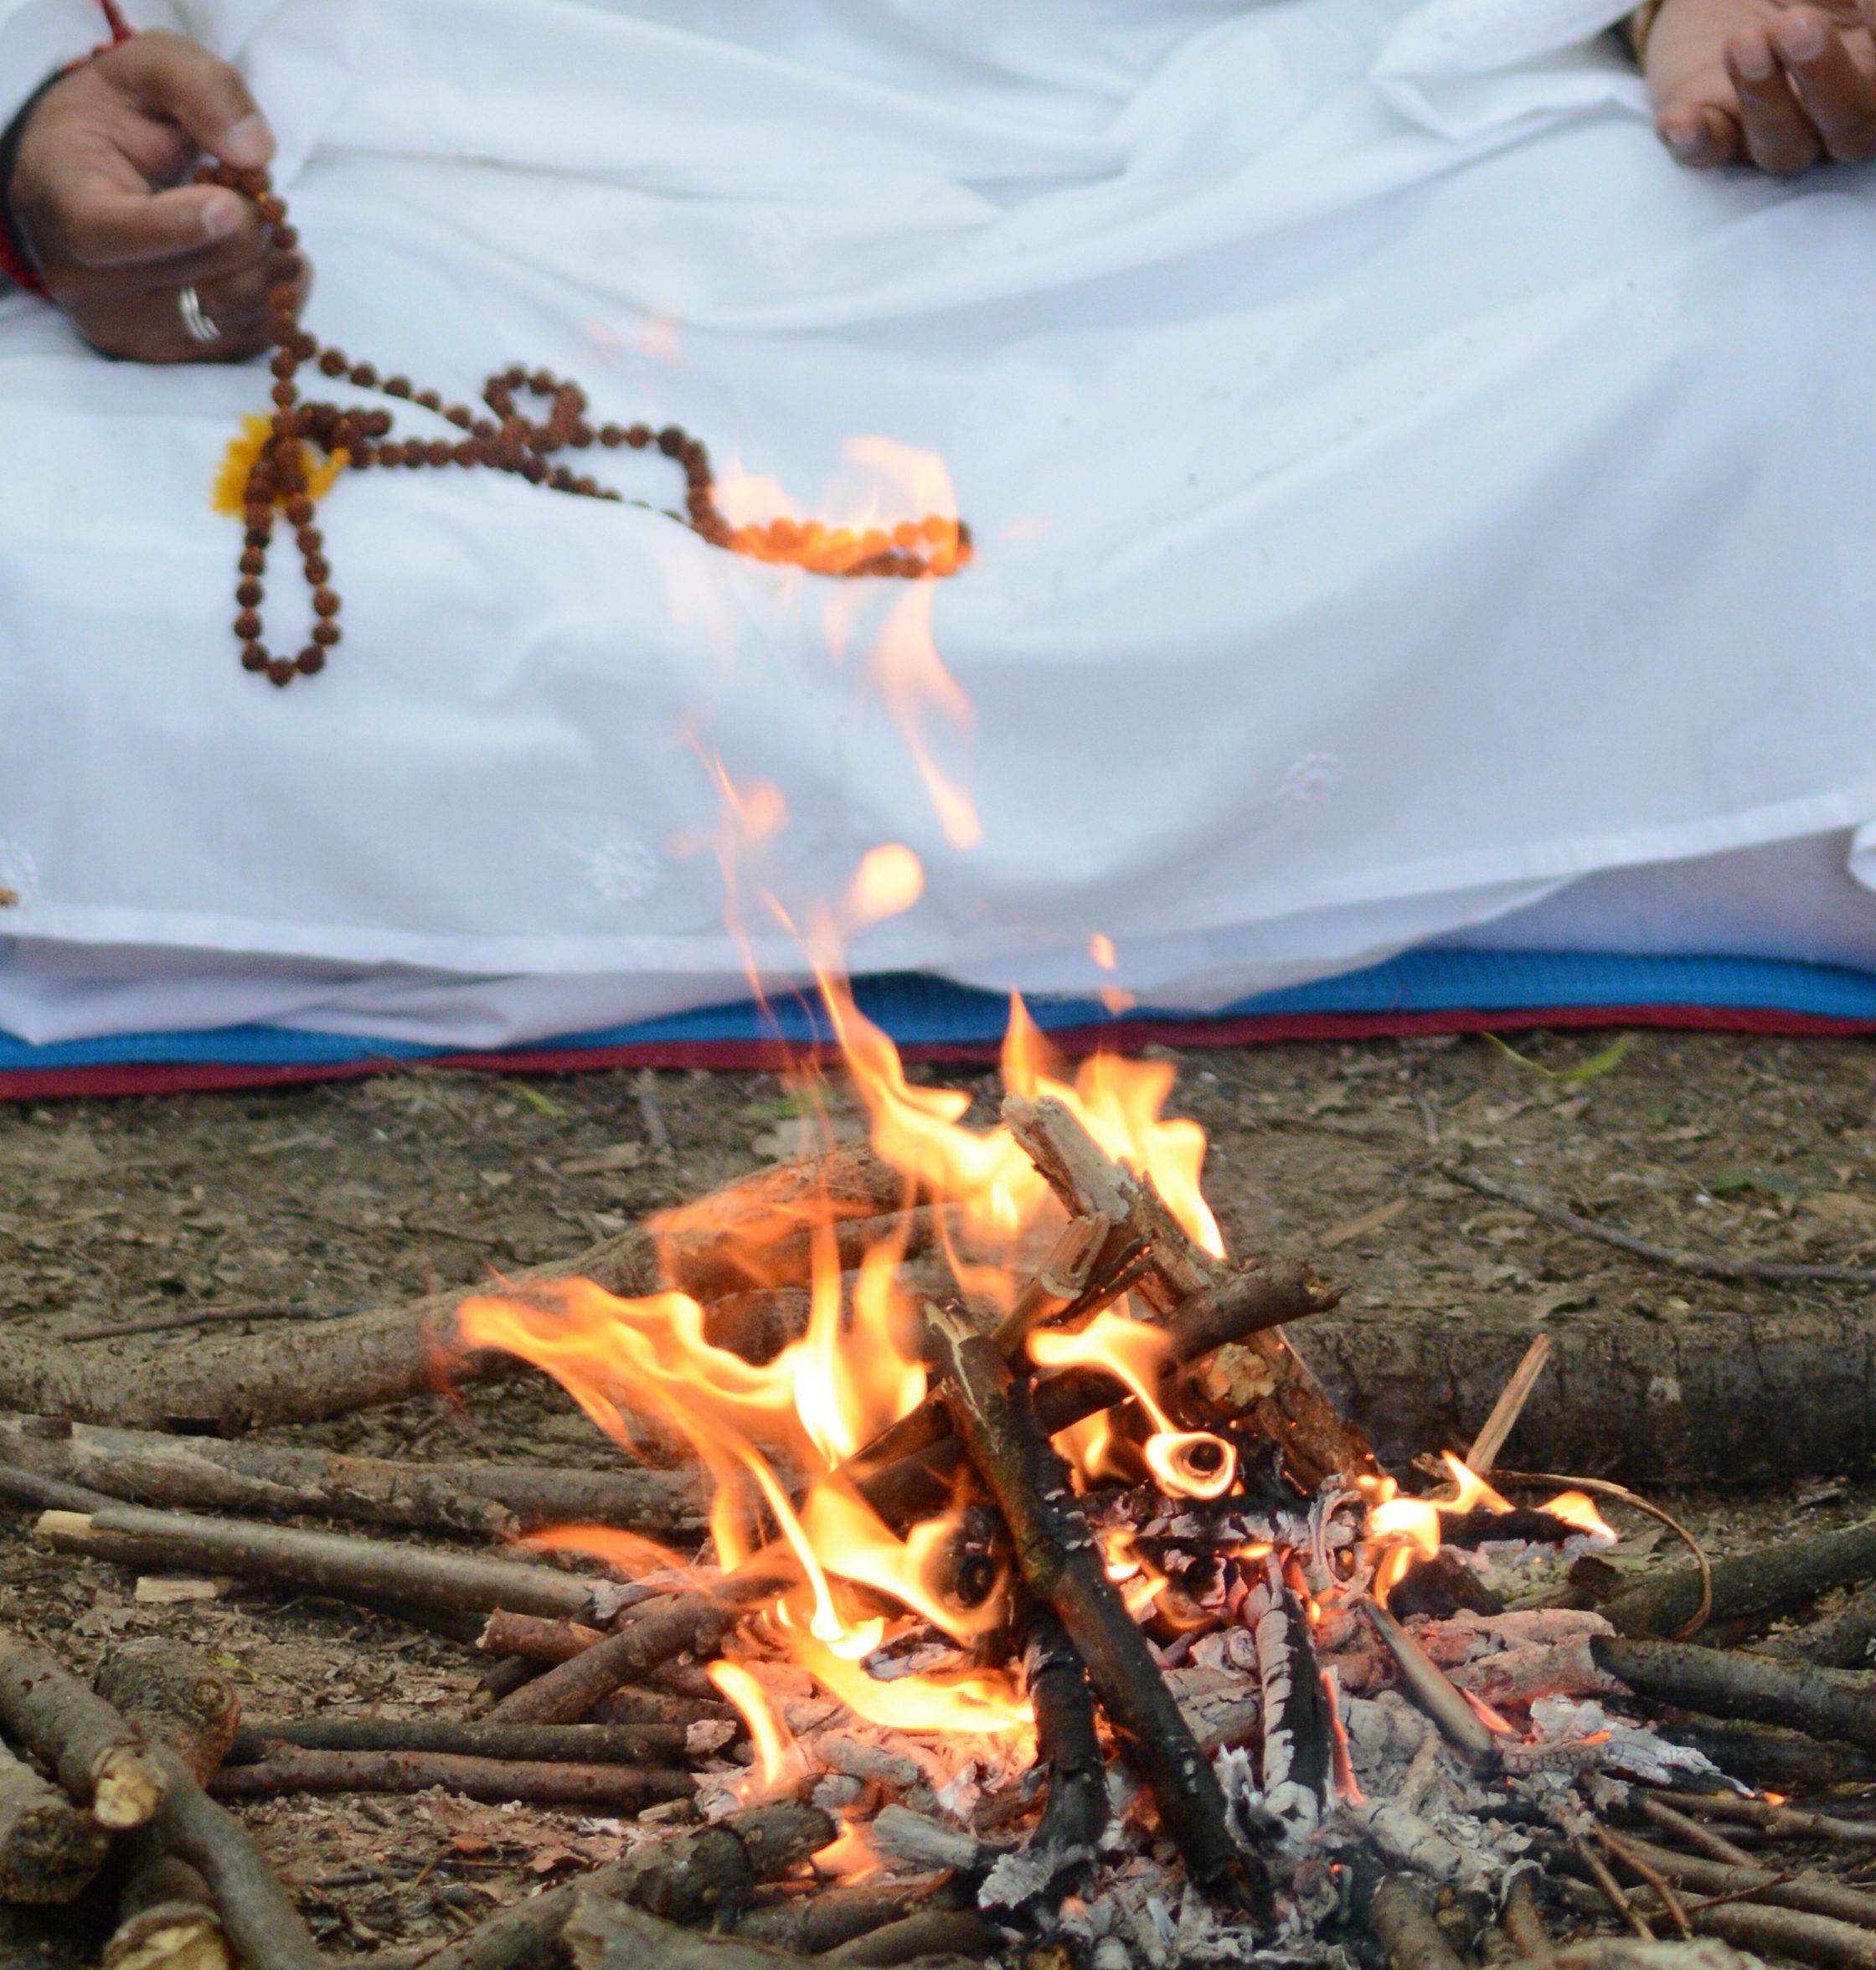 Mohanji performing Havan, ritual for cleansing